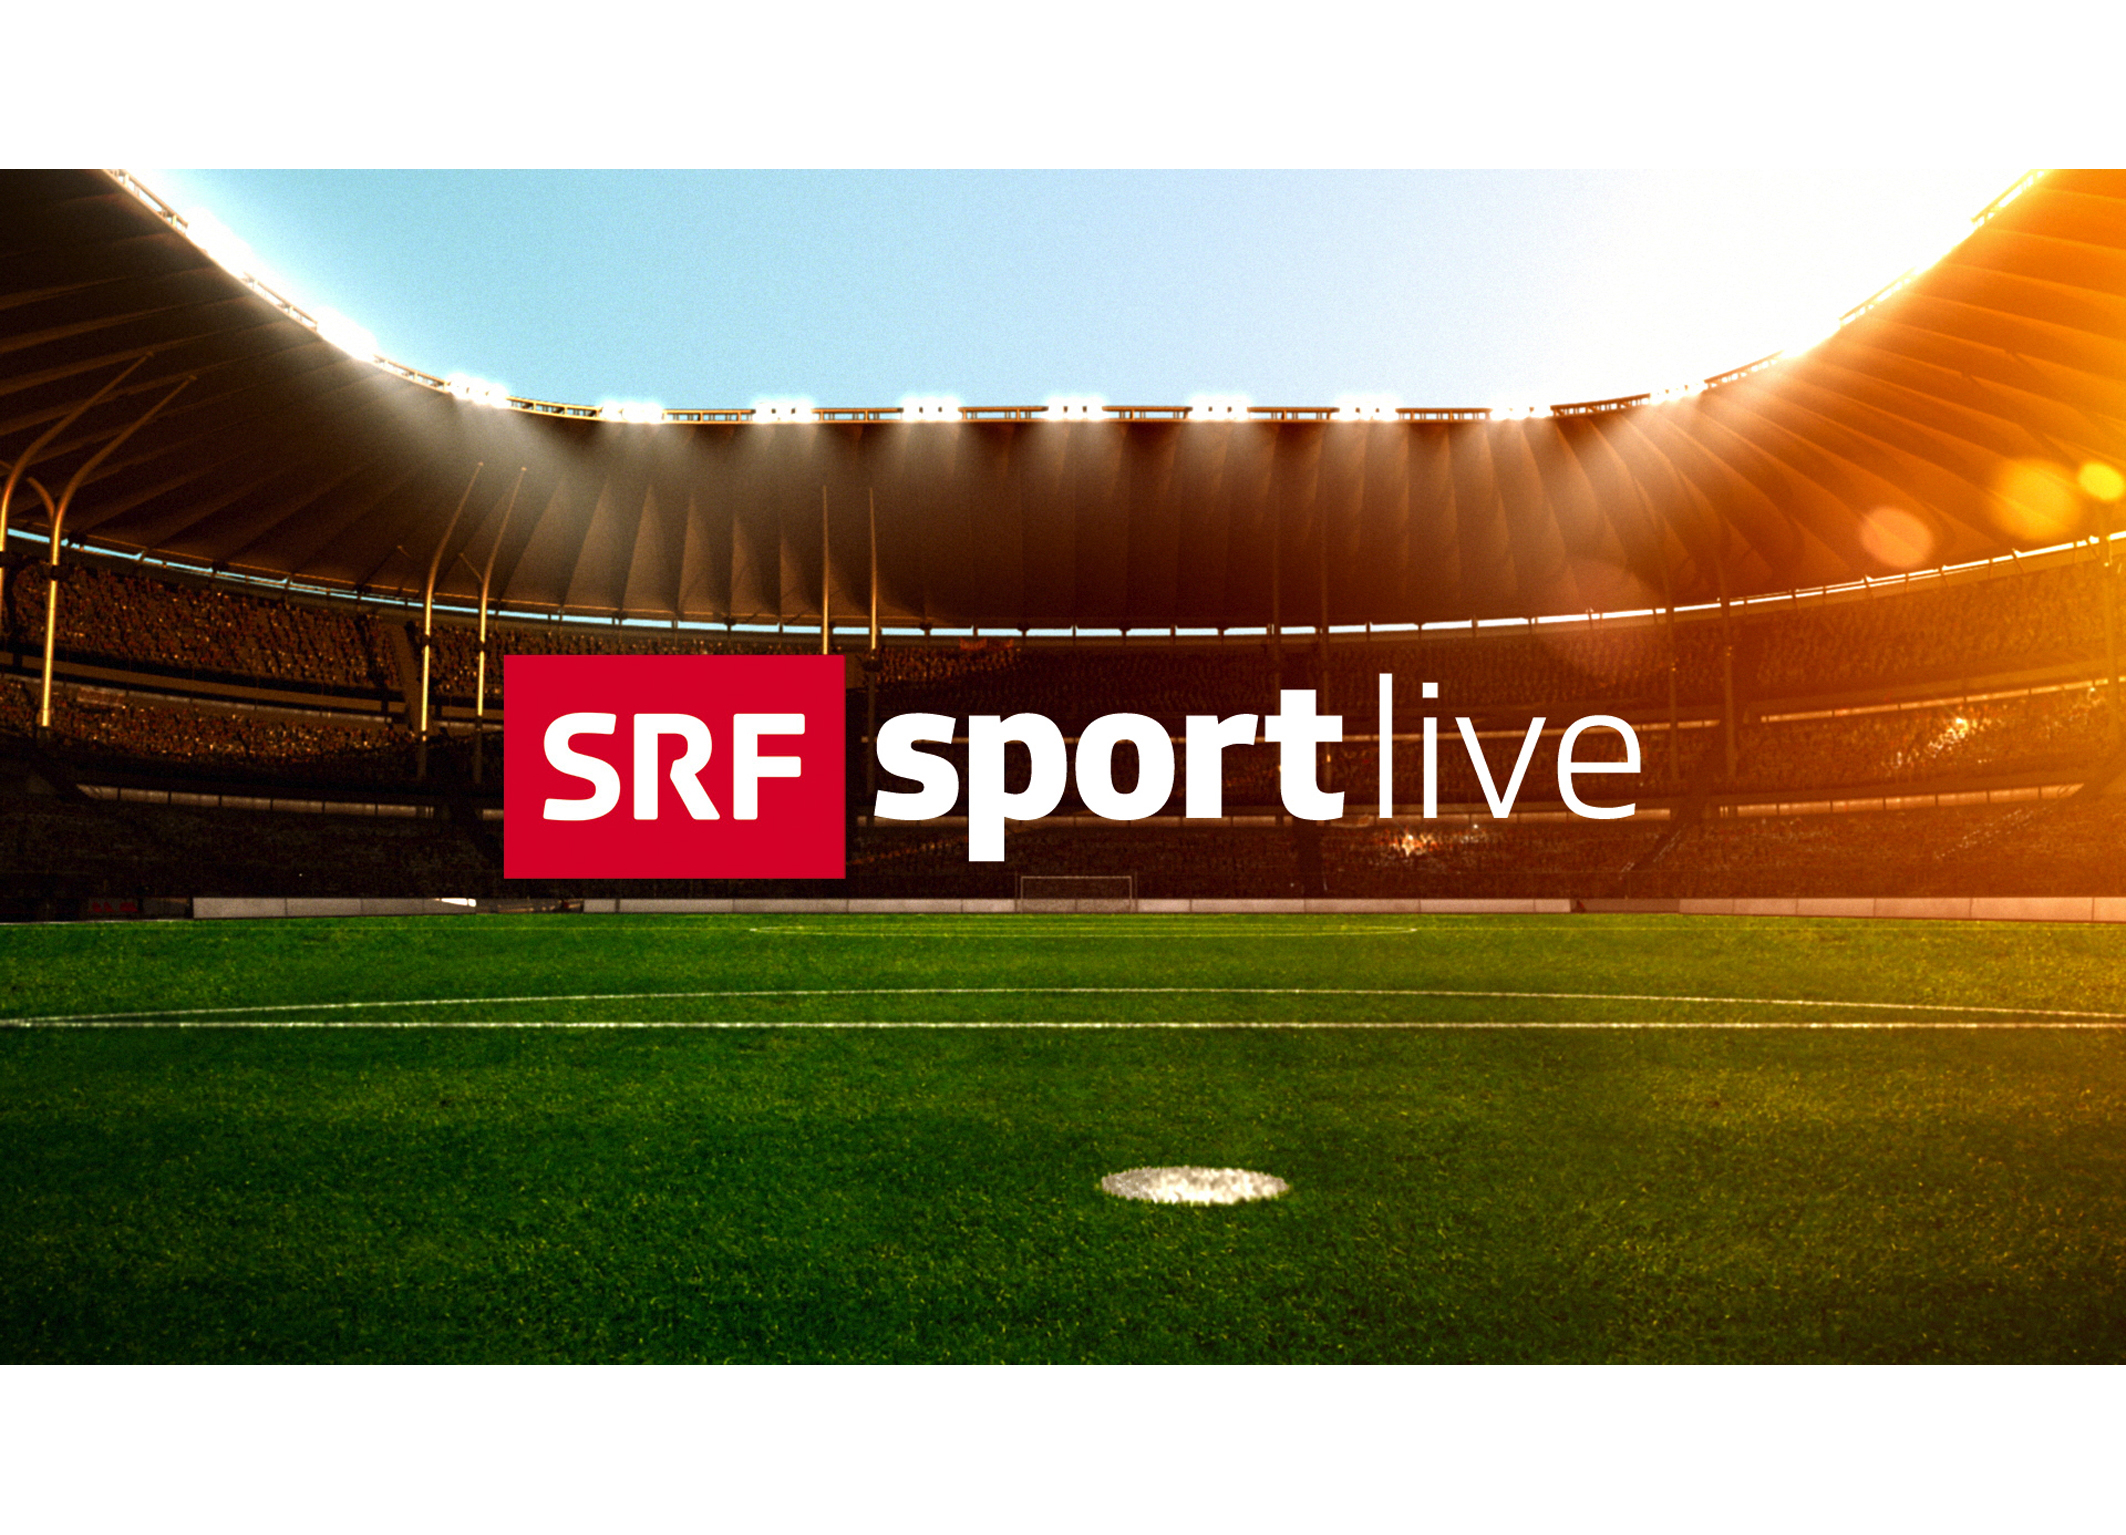 SRF Sport Fussball Livespiel von heute Abend zwischen Fenerbahçe und GC nicht im TV - Medienportal